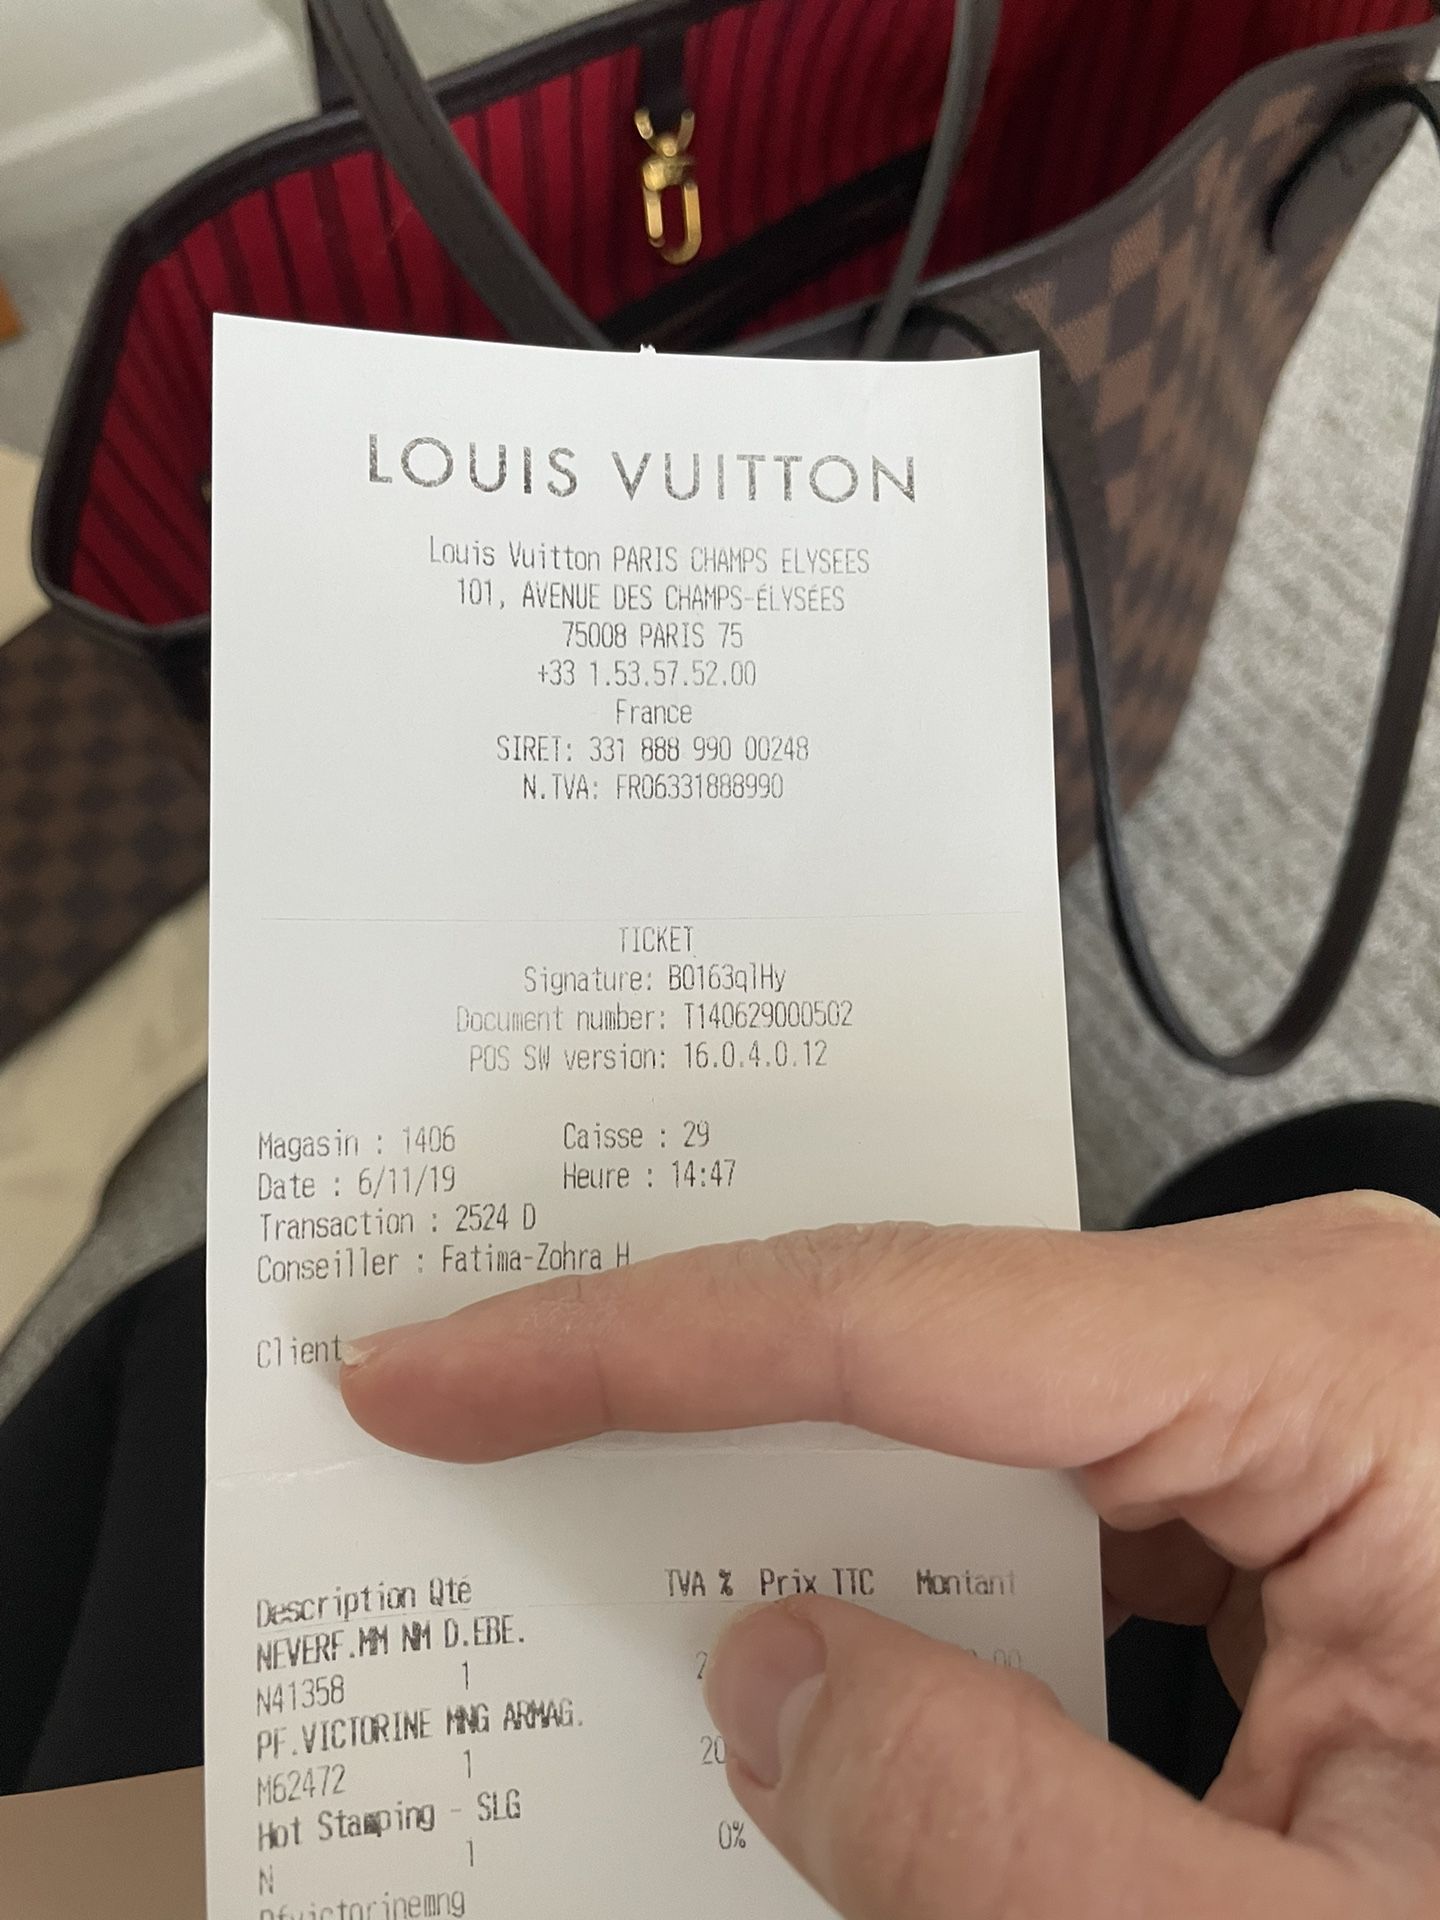 Louis Vuitton Hot Stamping 101